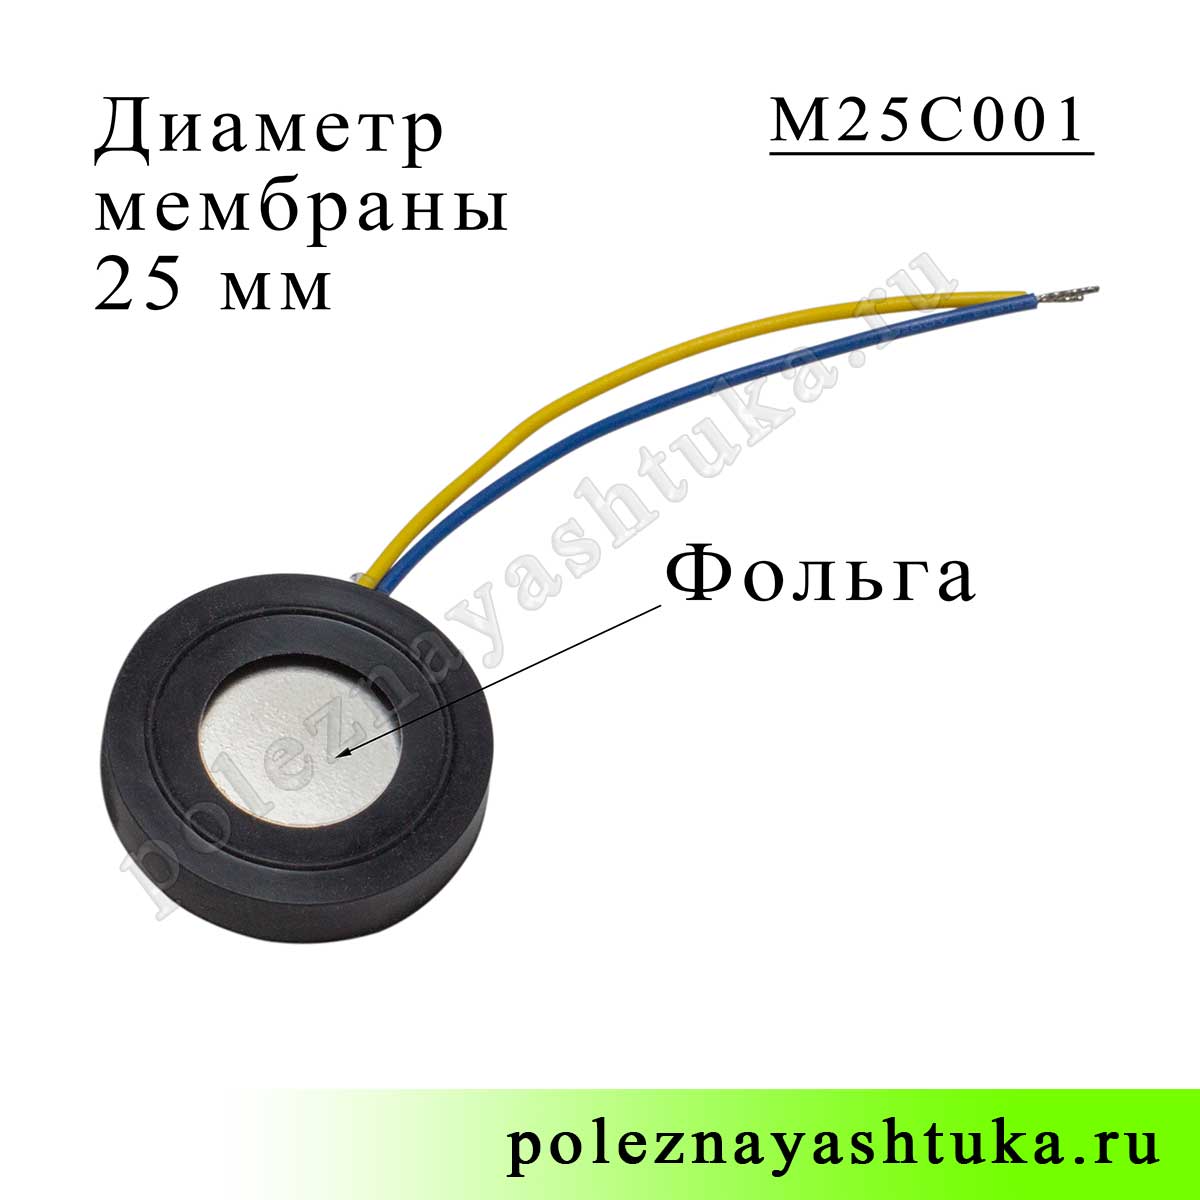 Фольгированная ультразвуковая мембрана увлажнителя воздуха, 25 мм диаметр, с проводами